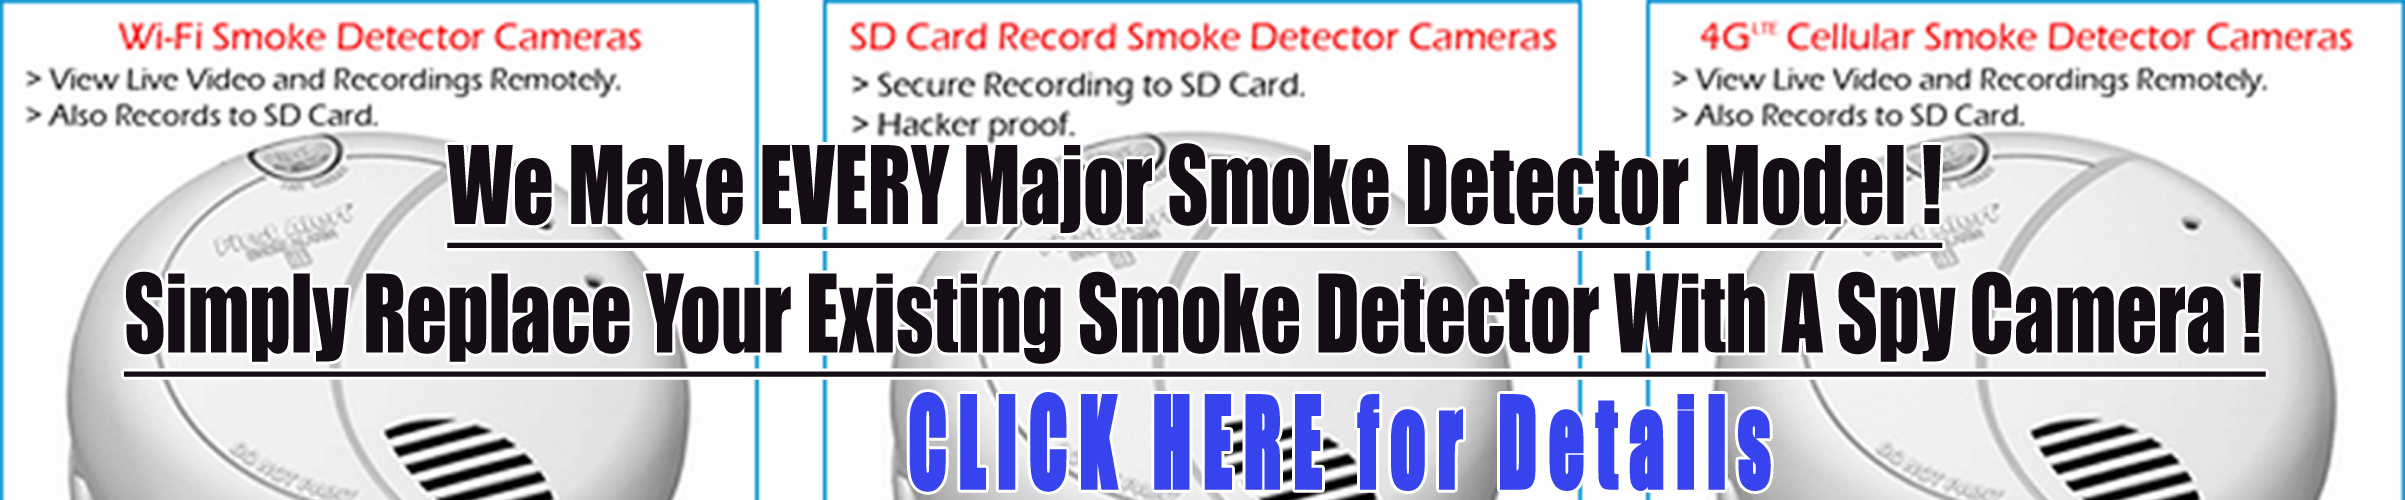 Smoke Detector Cameras